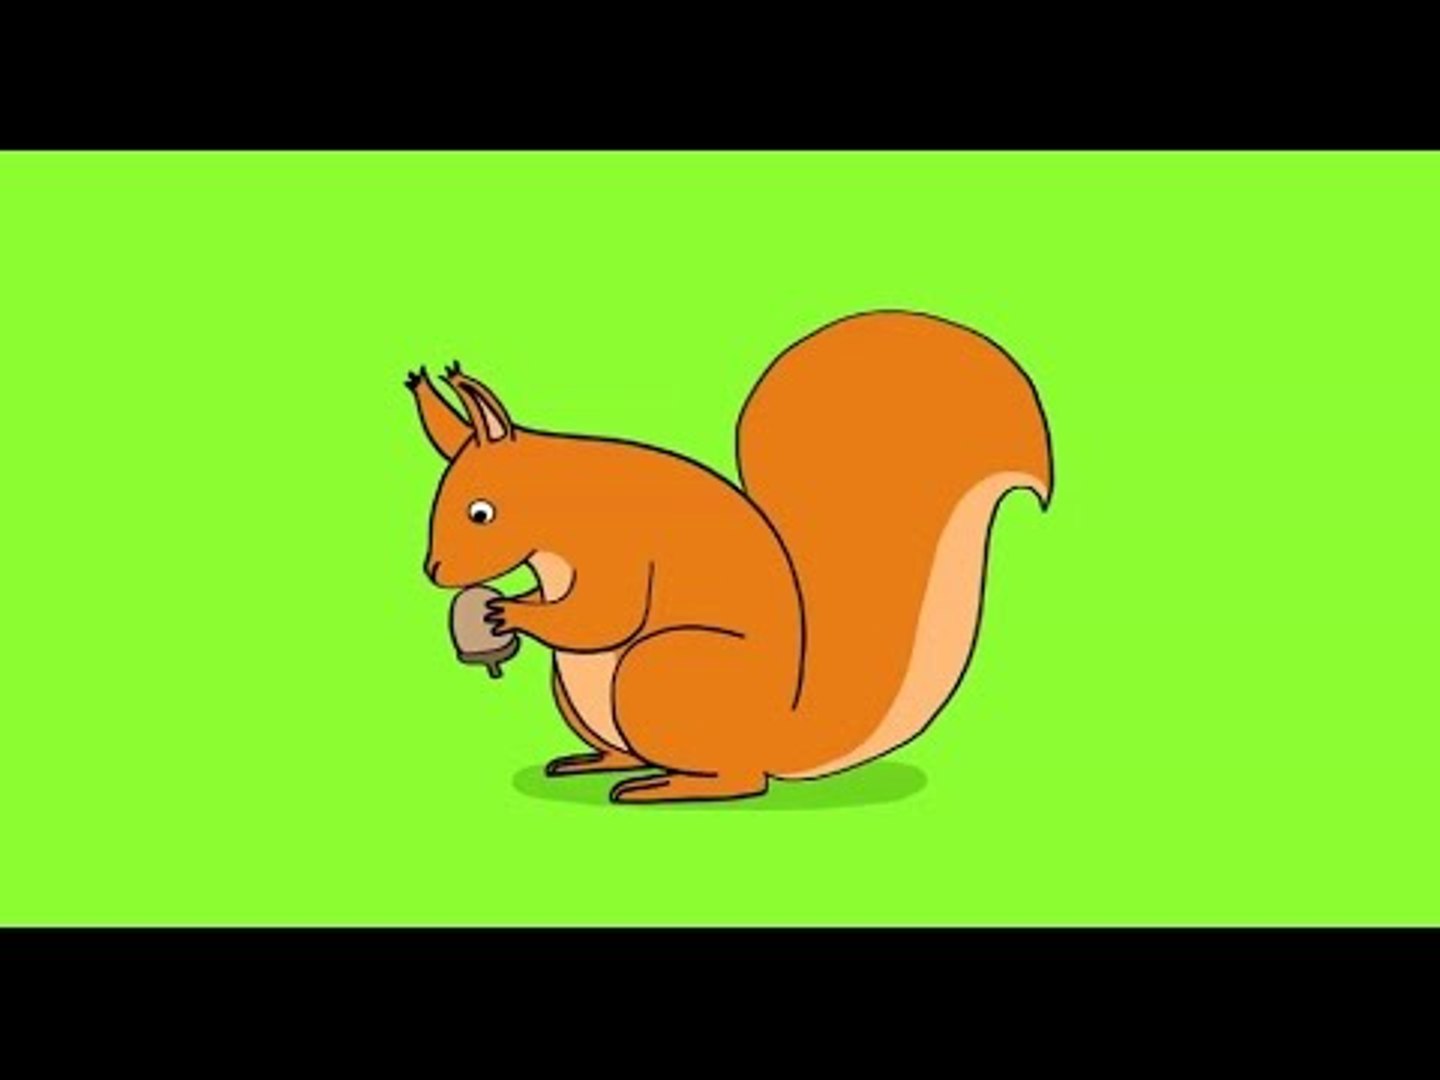 Comment dessiner un écureuil ? Dessin écureuil facile par étapes